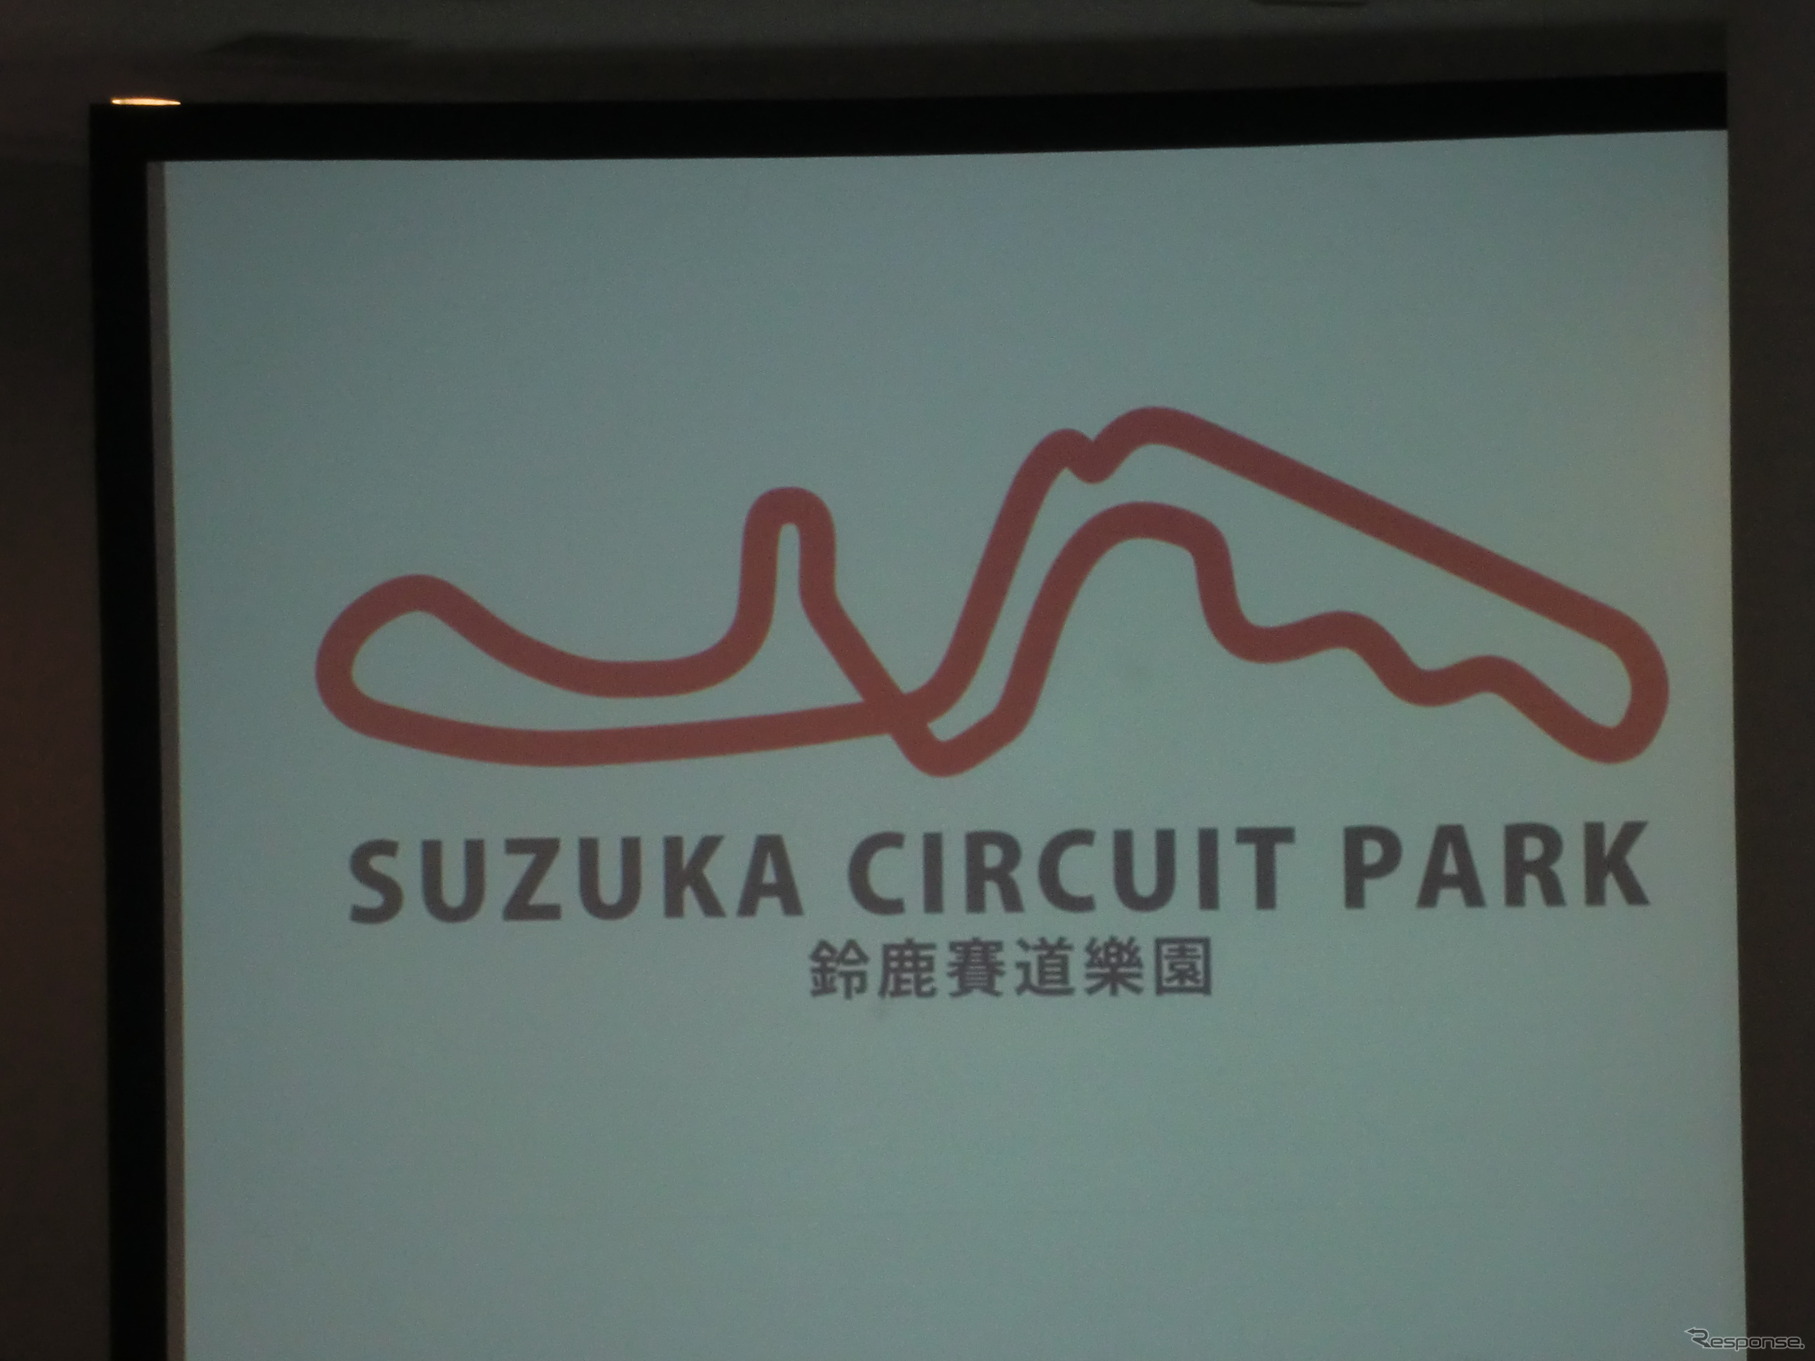 鈴鹿サーキットは台湾の「SUZUKA CIRCUIT PARK」で国際展開を図る。